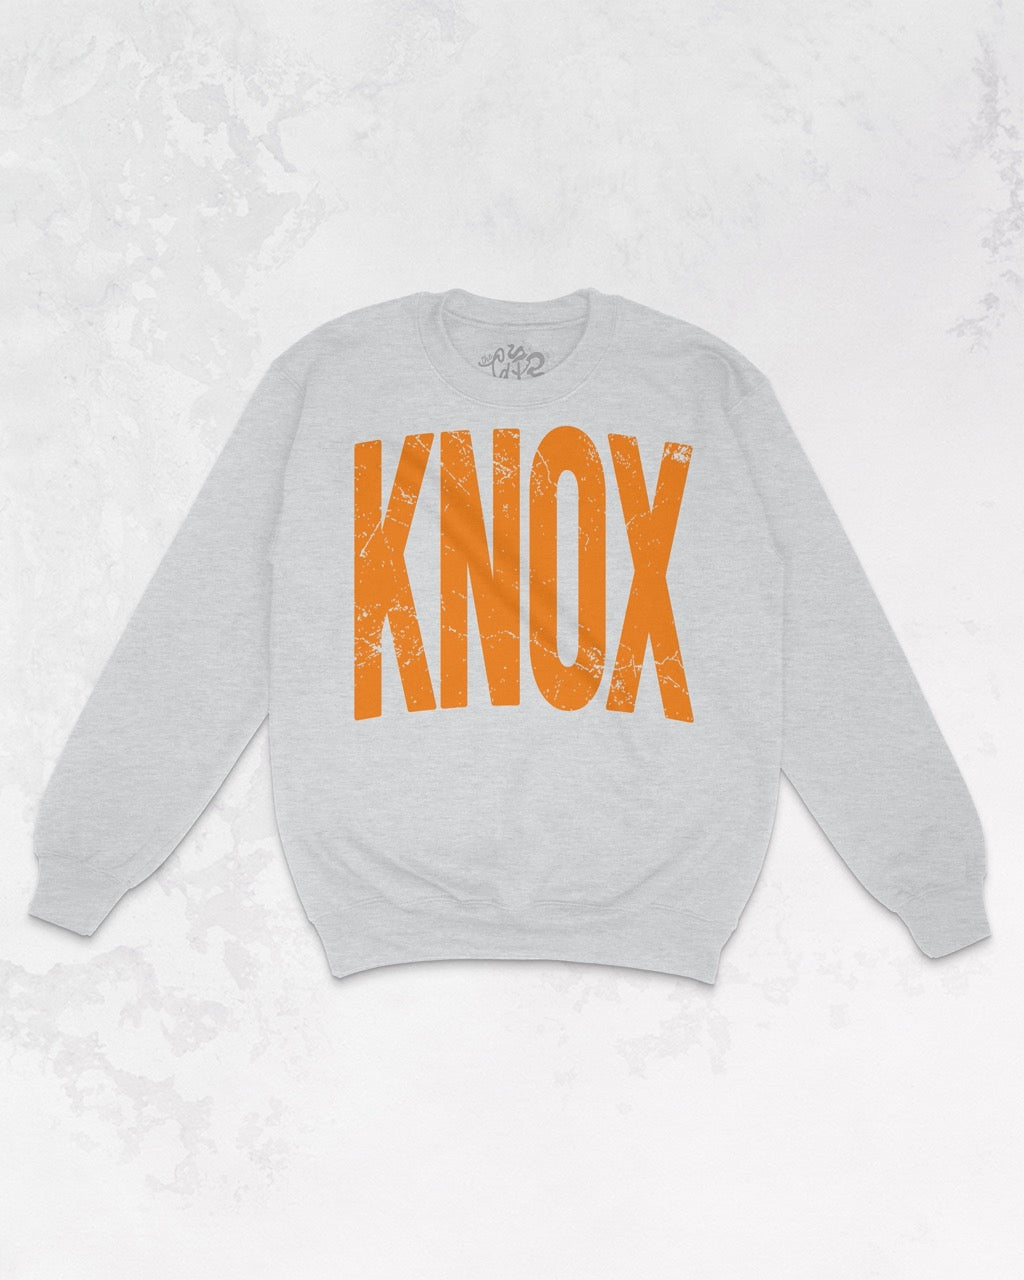 Underground Original Design: Knoxville, Tennessee Oversized 90's Sweatshirt